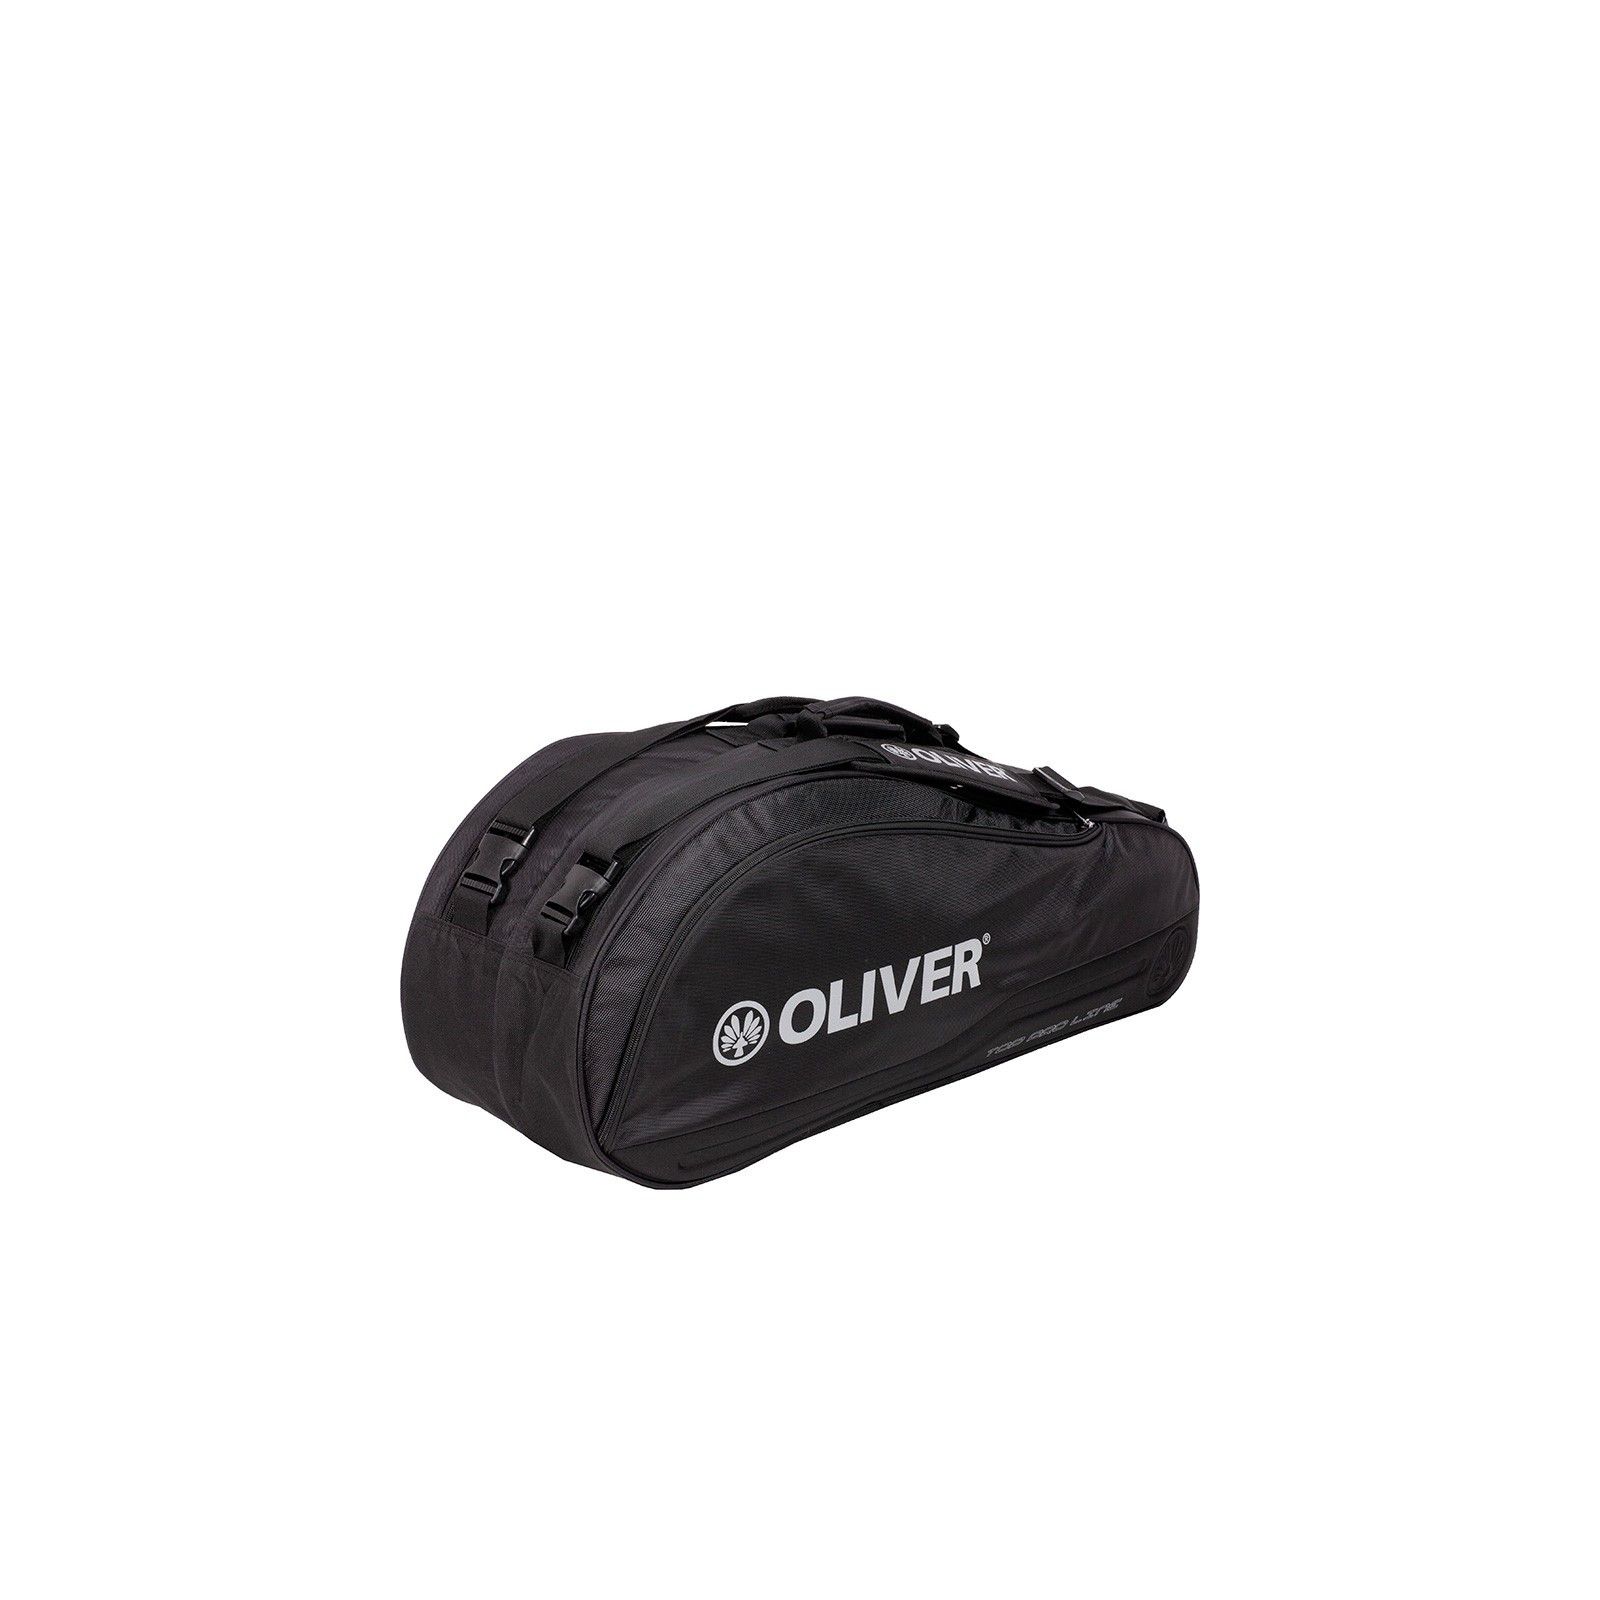 Oliver Top Pro Line Racketbag Black